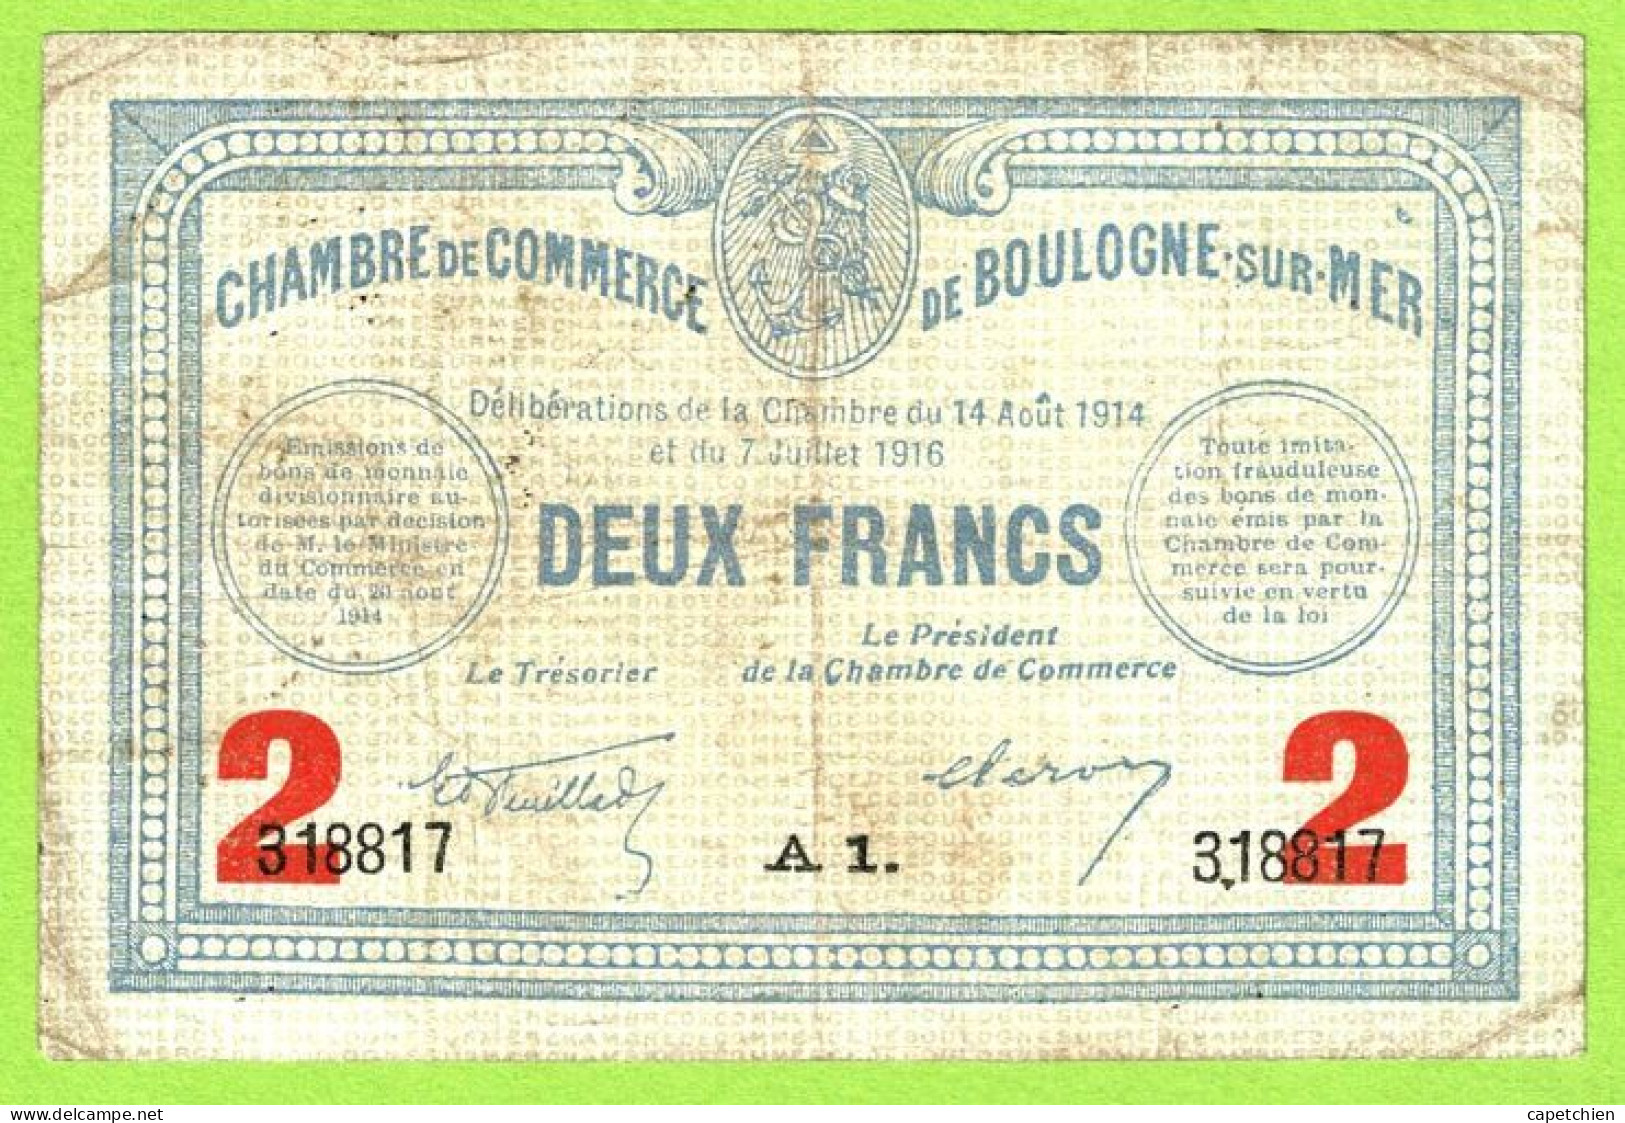 FRANCE / CHAMBRE De COMMERCE : BOULOGNE SUR MER / 2 FRANCS / 14 AOUT 1914 - 7 JUILLET 1916  / N° 318817 / SERIE A1 - Chambre De Commerce